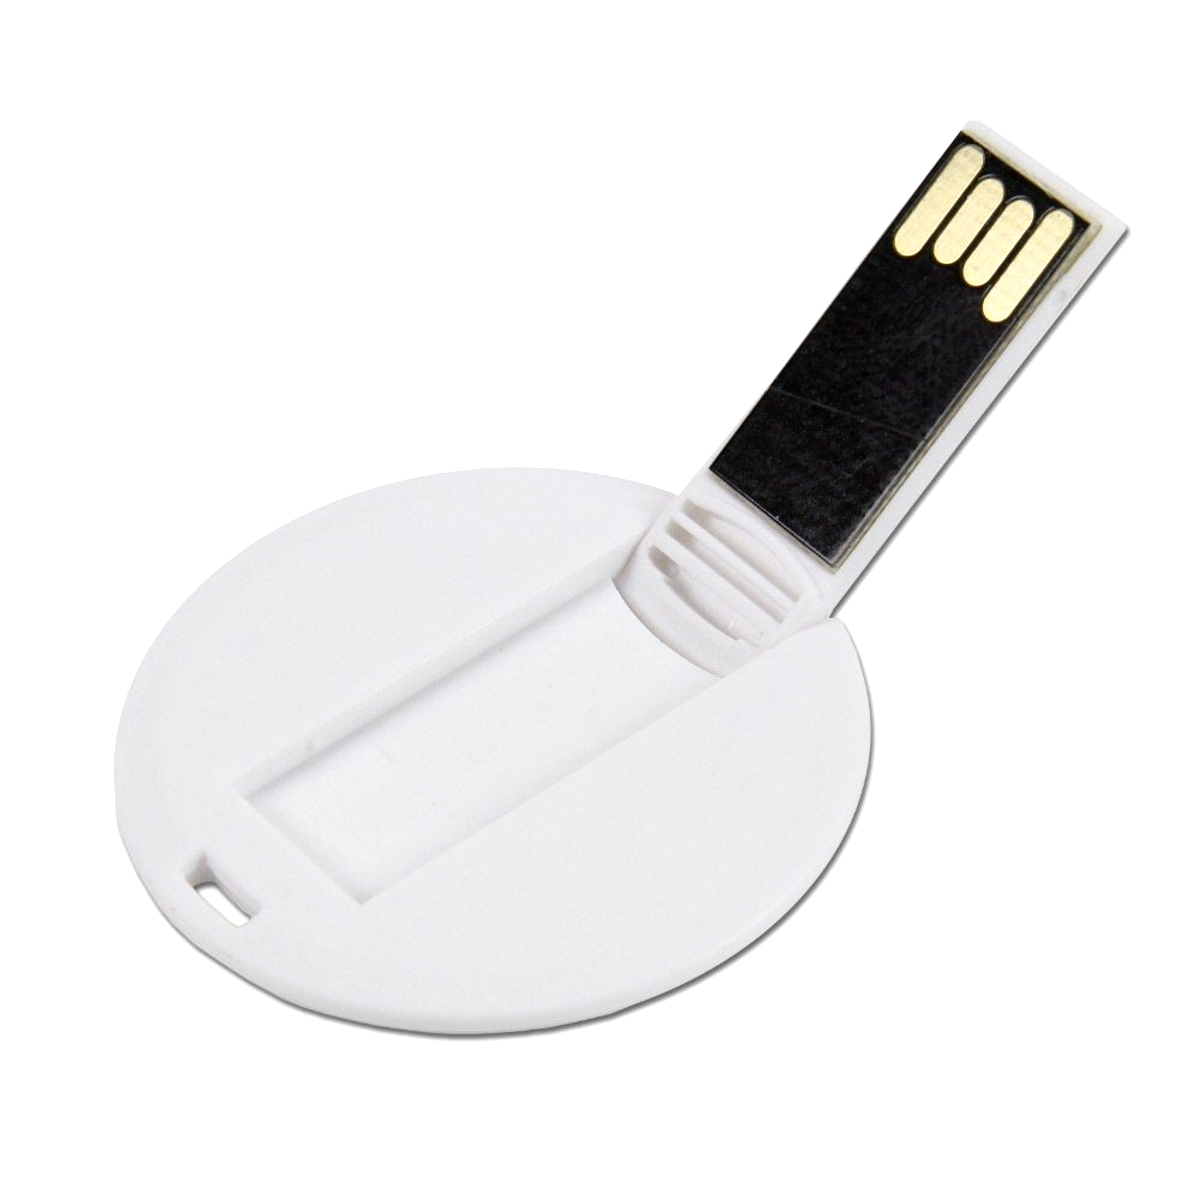 USB GERMANY ® GB) DISC USB-Stick (Weiß, 32